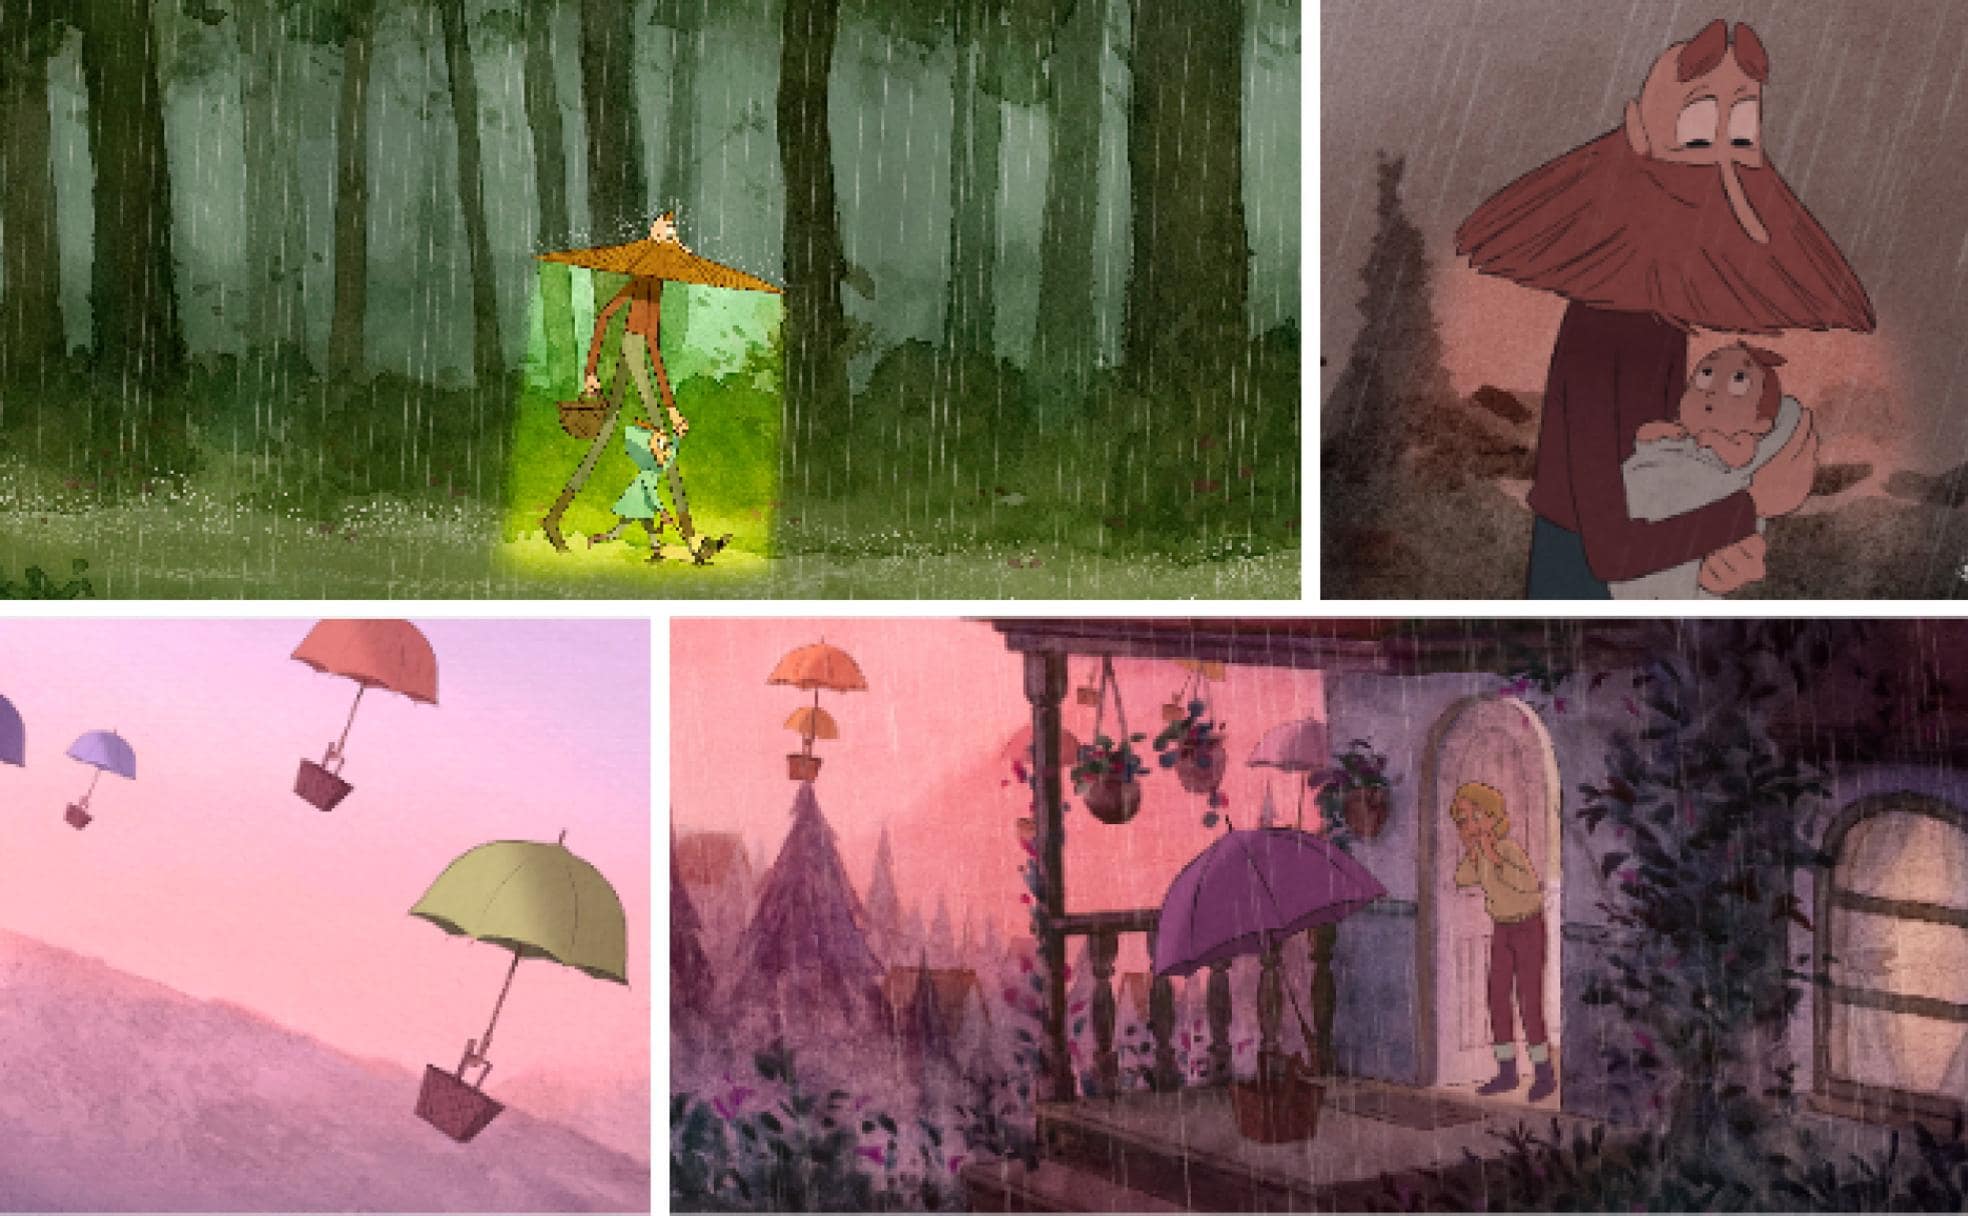 Fotogramas del cortometraje 'Umbrellas' donde aparecen los protagonistas, Kyna y su padre Din, y los paraguas que llevan a los bebés a sus casas en el universo donde se ambienta.